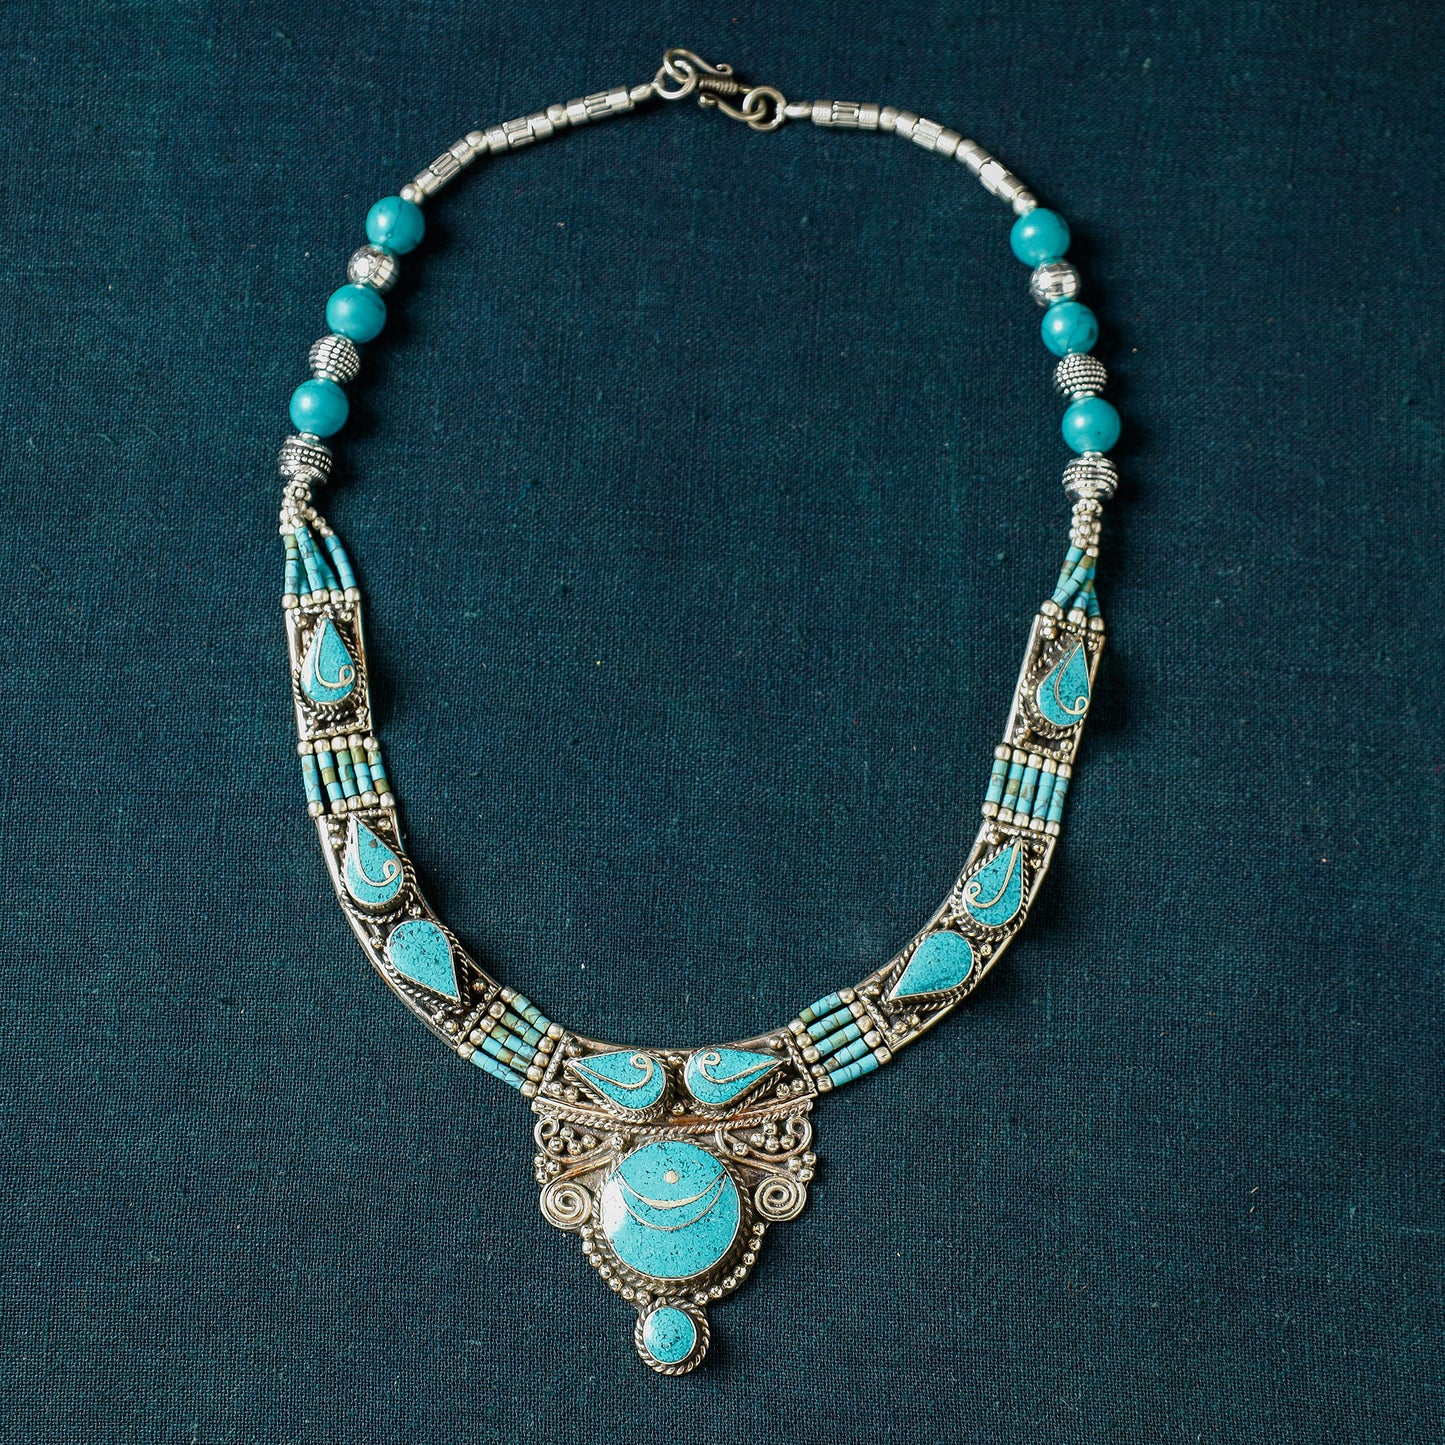 Ethnic Tribal Tibetan Beadwork Necklace from Himalaya